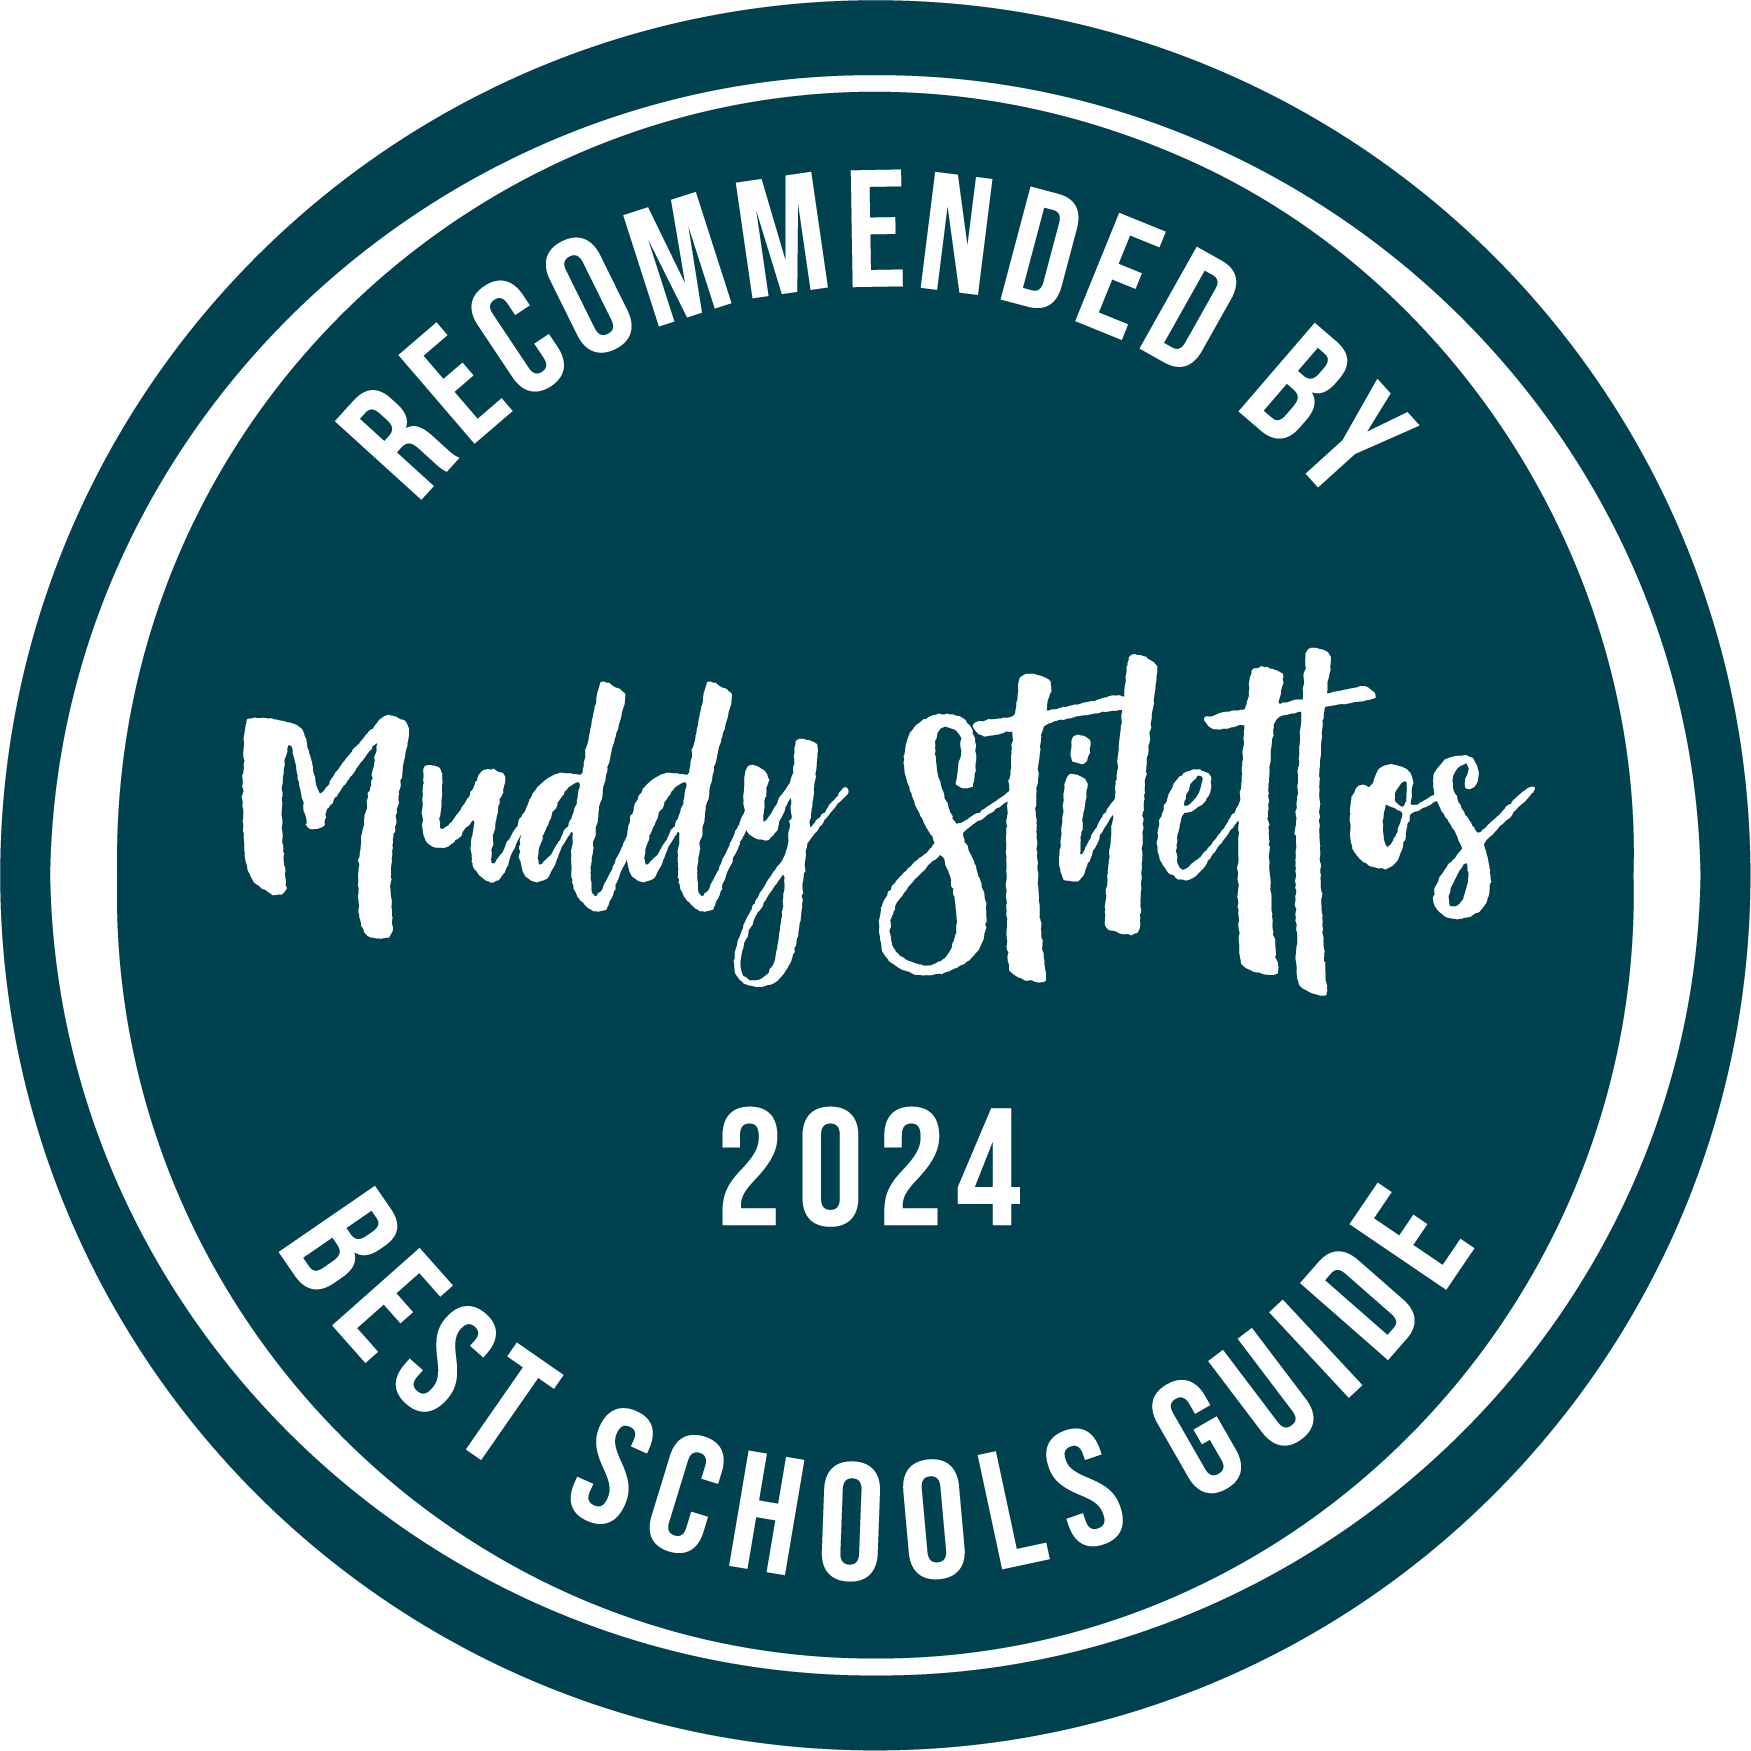 Best Schools Guide Roundel